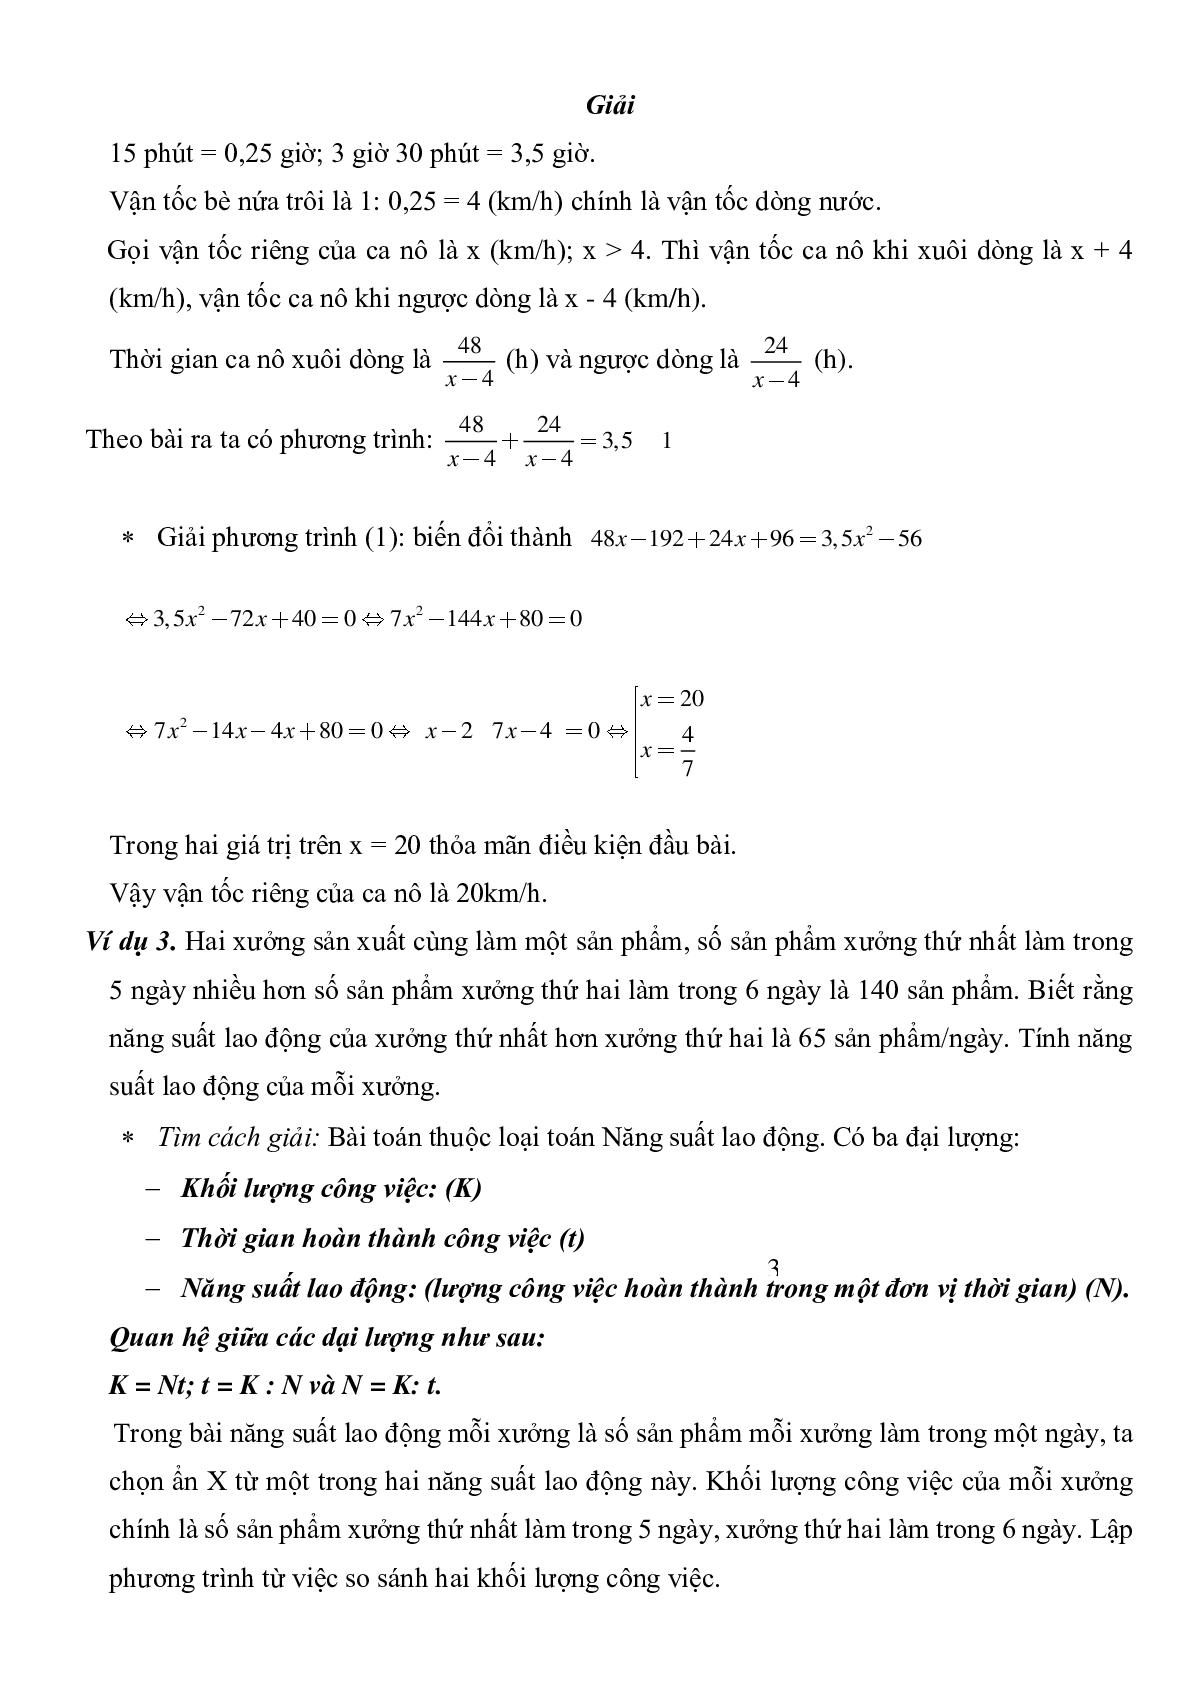 Giải toán bằng cách lập phương trình (trang 3)